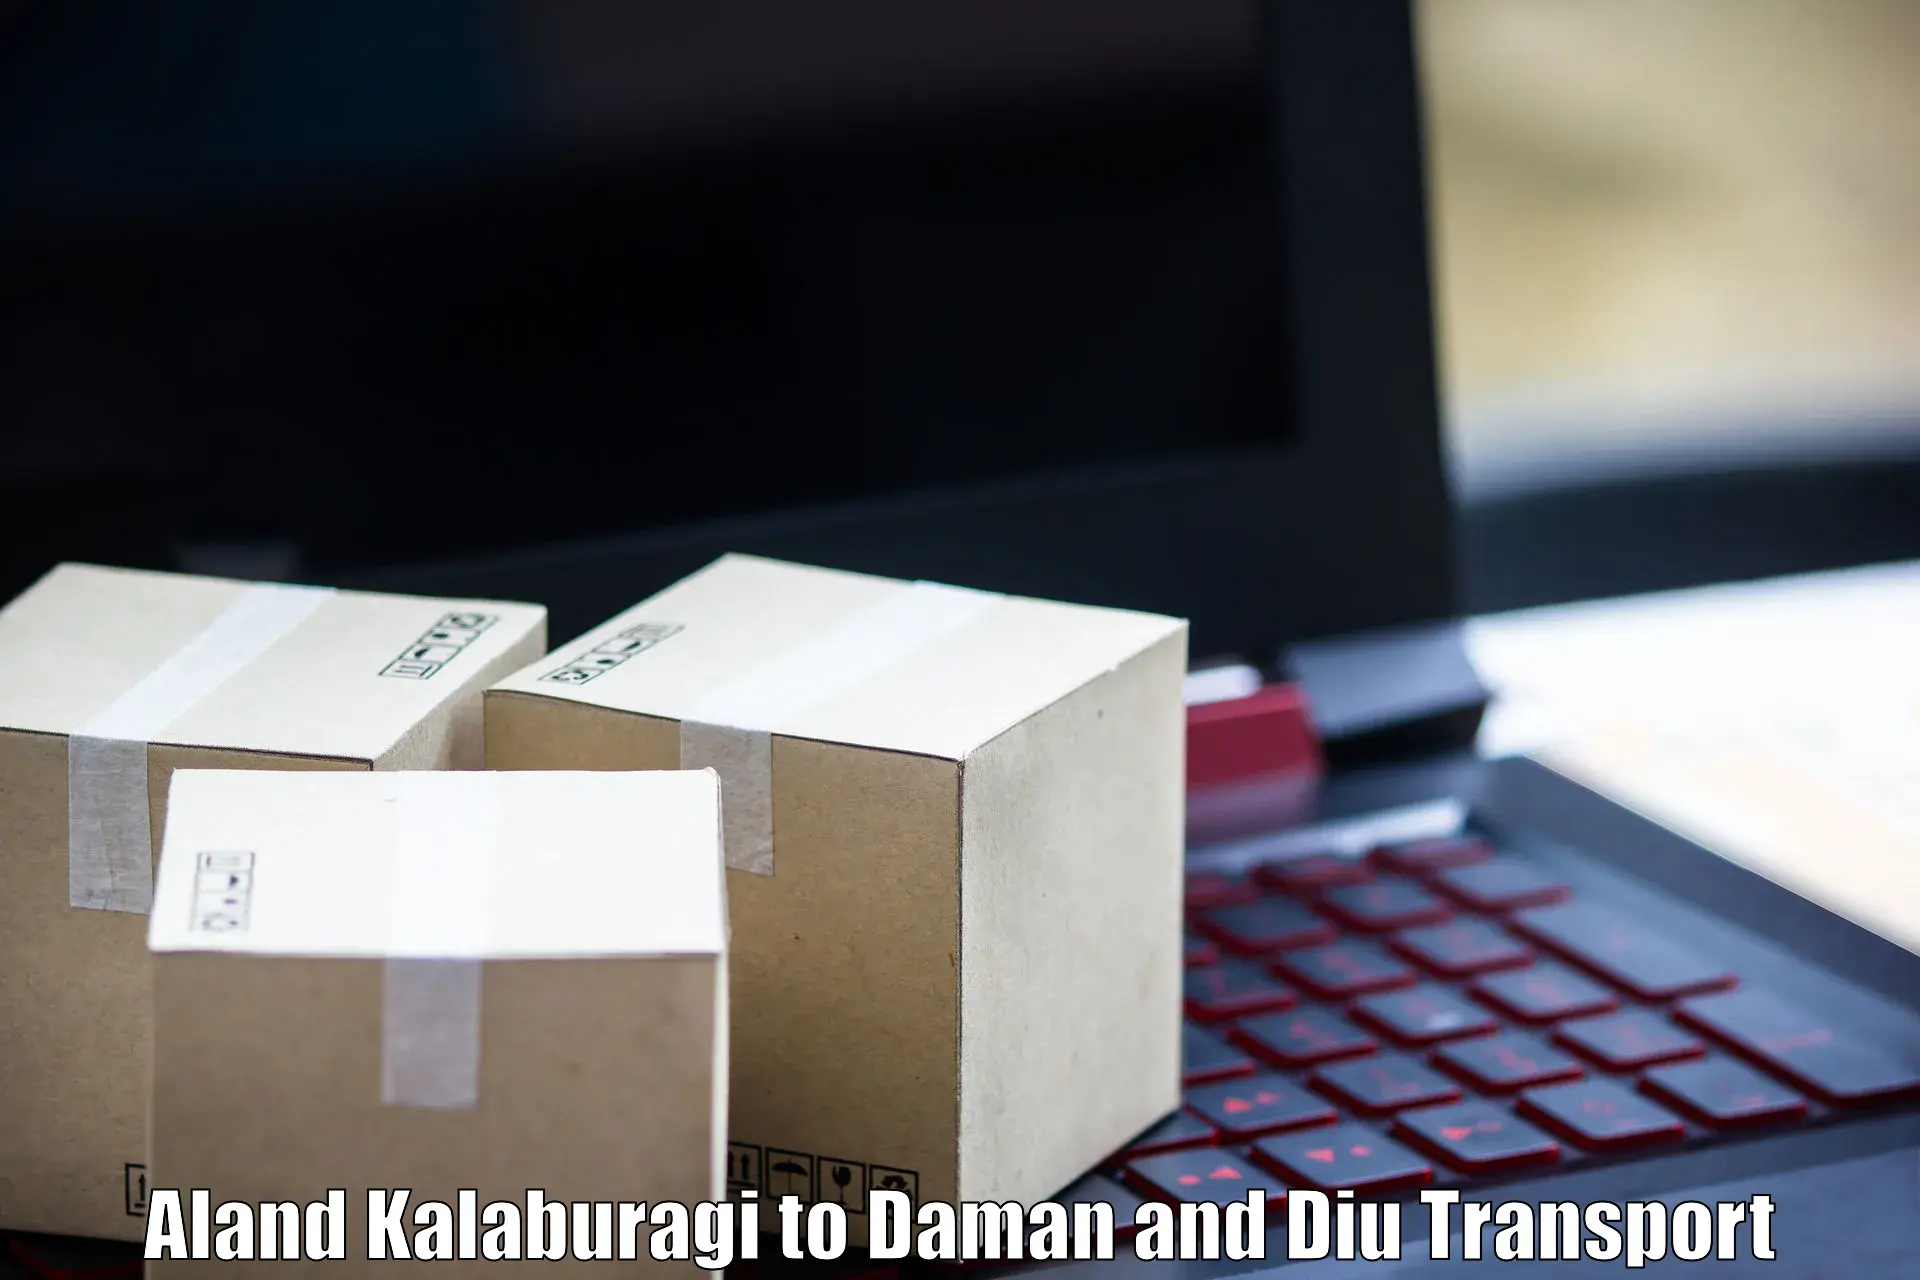 Container transport service Aland Kalaburagi to Daman and Diu